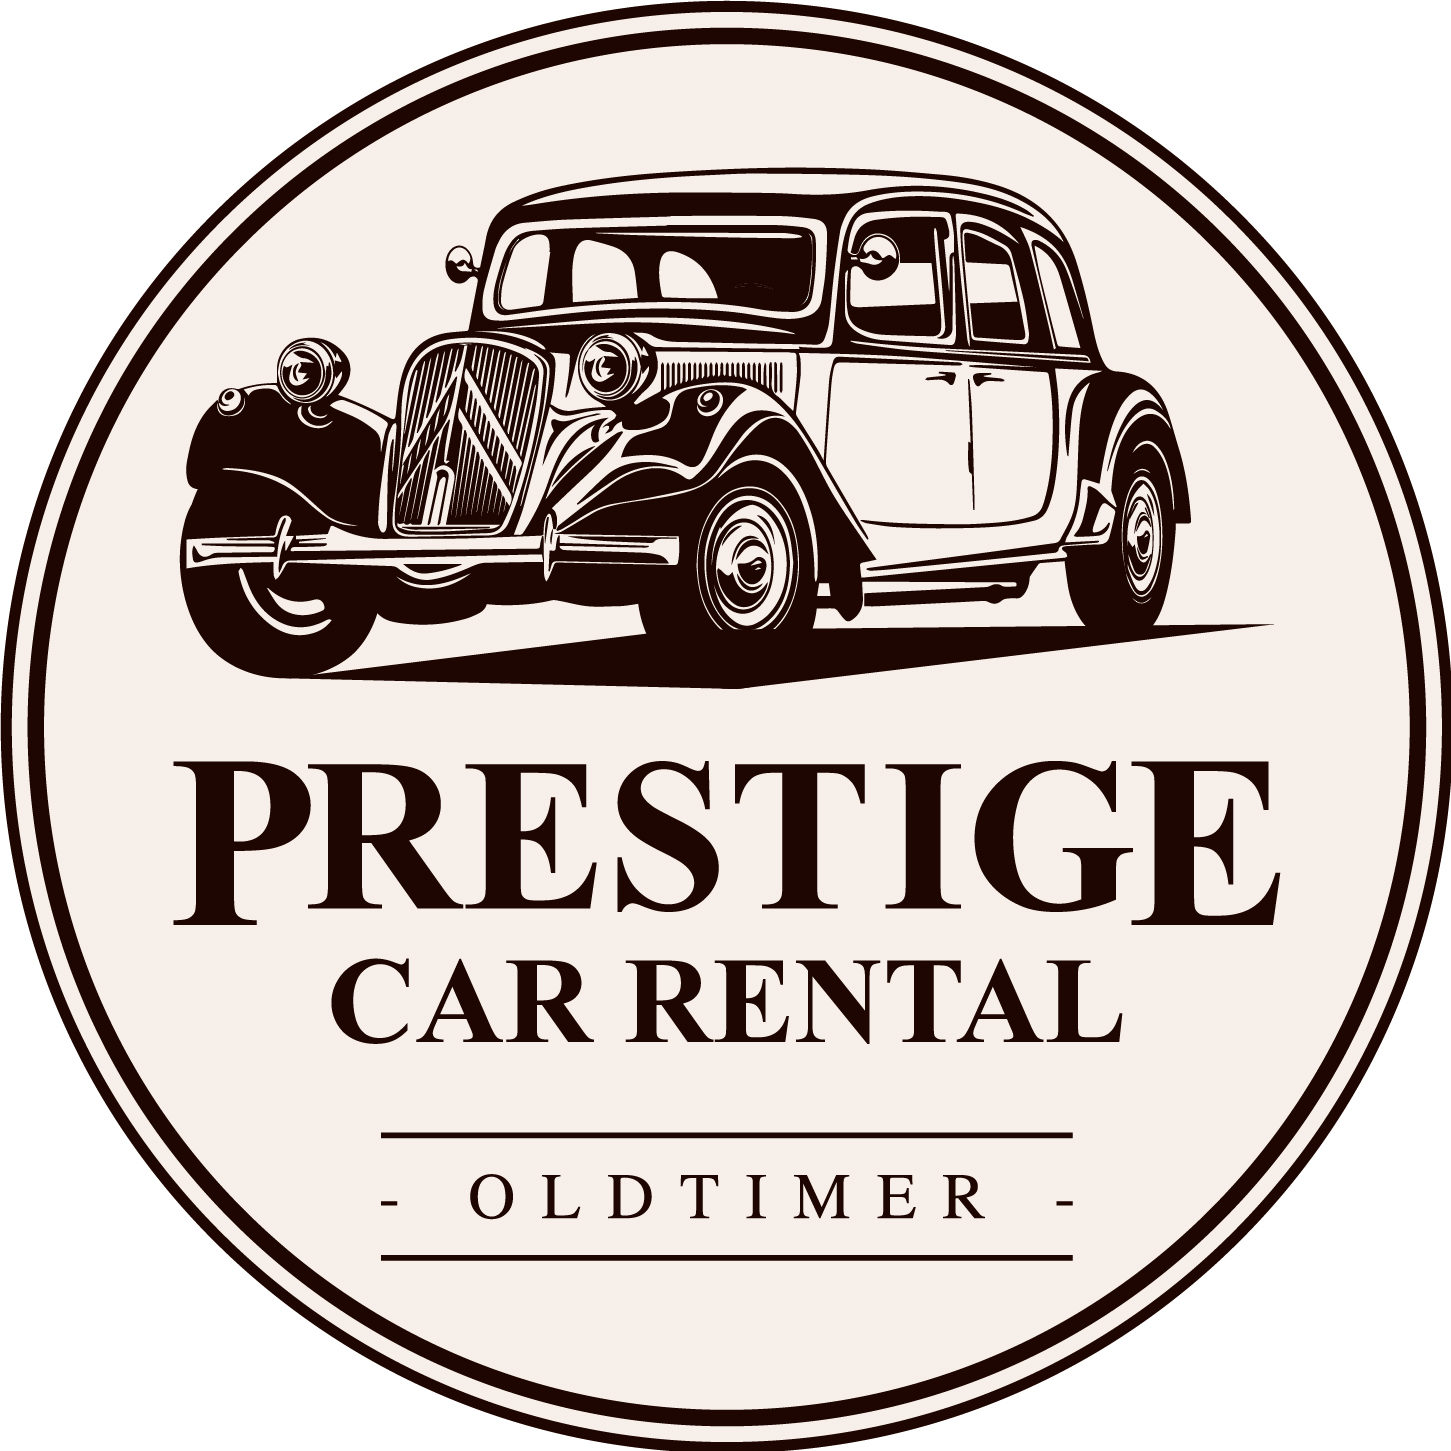 Prestige Car Rental – Oldtimer